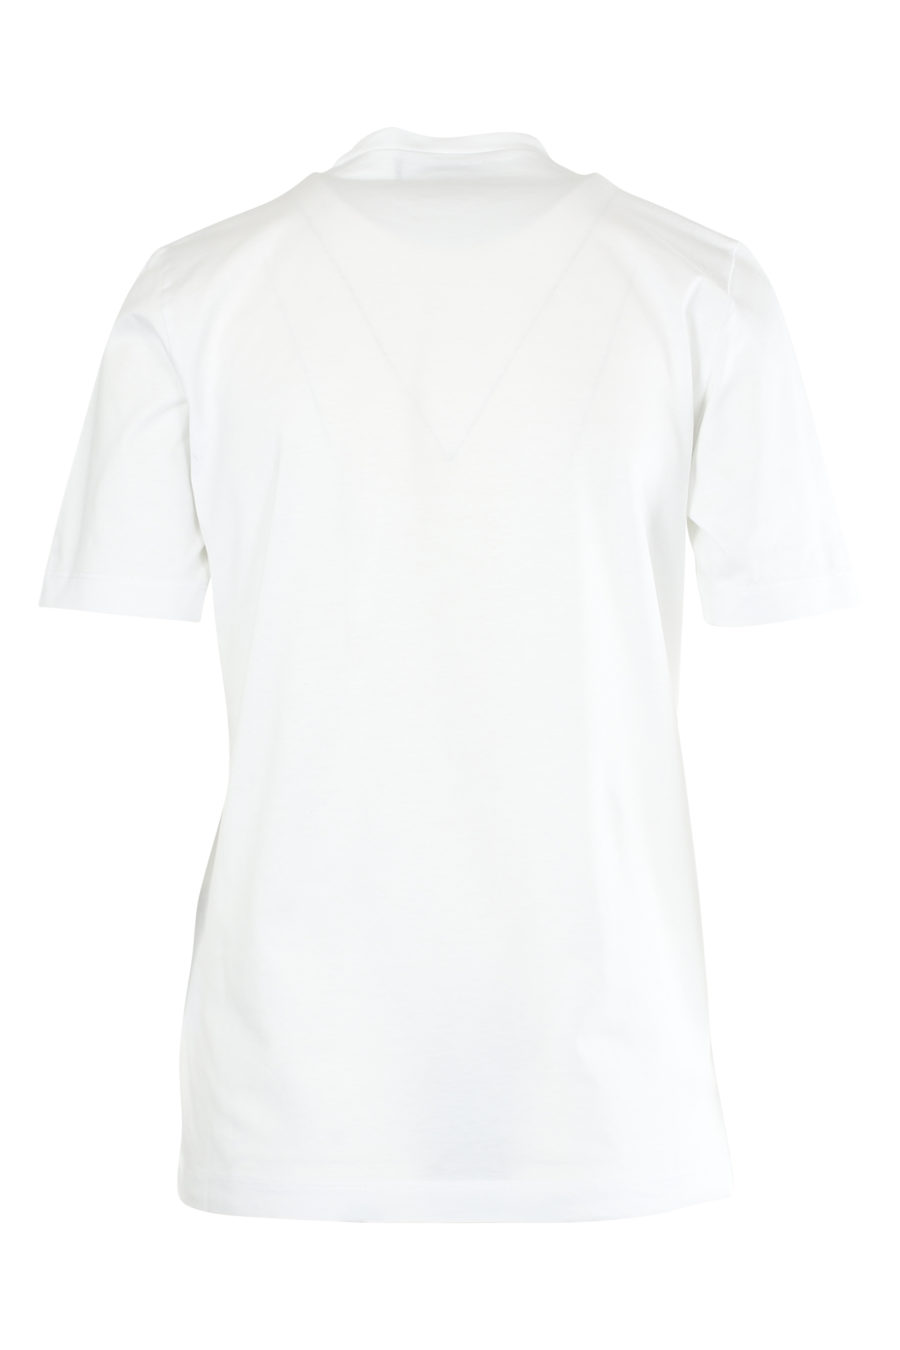 Camiseta blanca de manga corta con corazón - IMG 5469